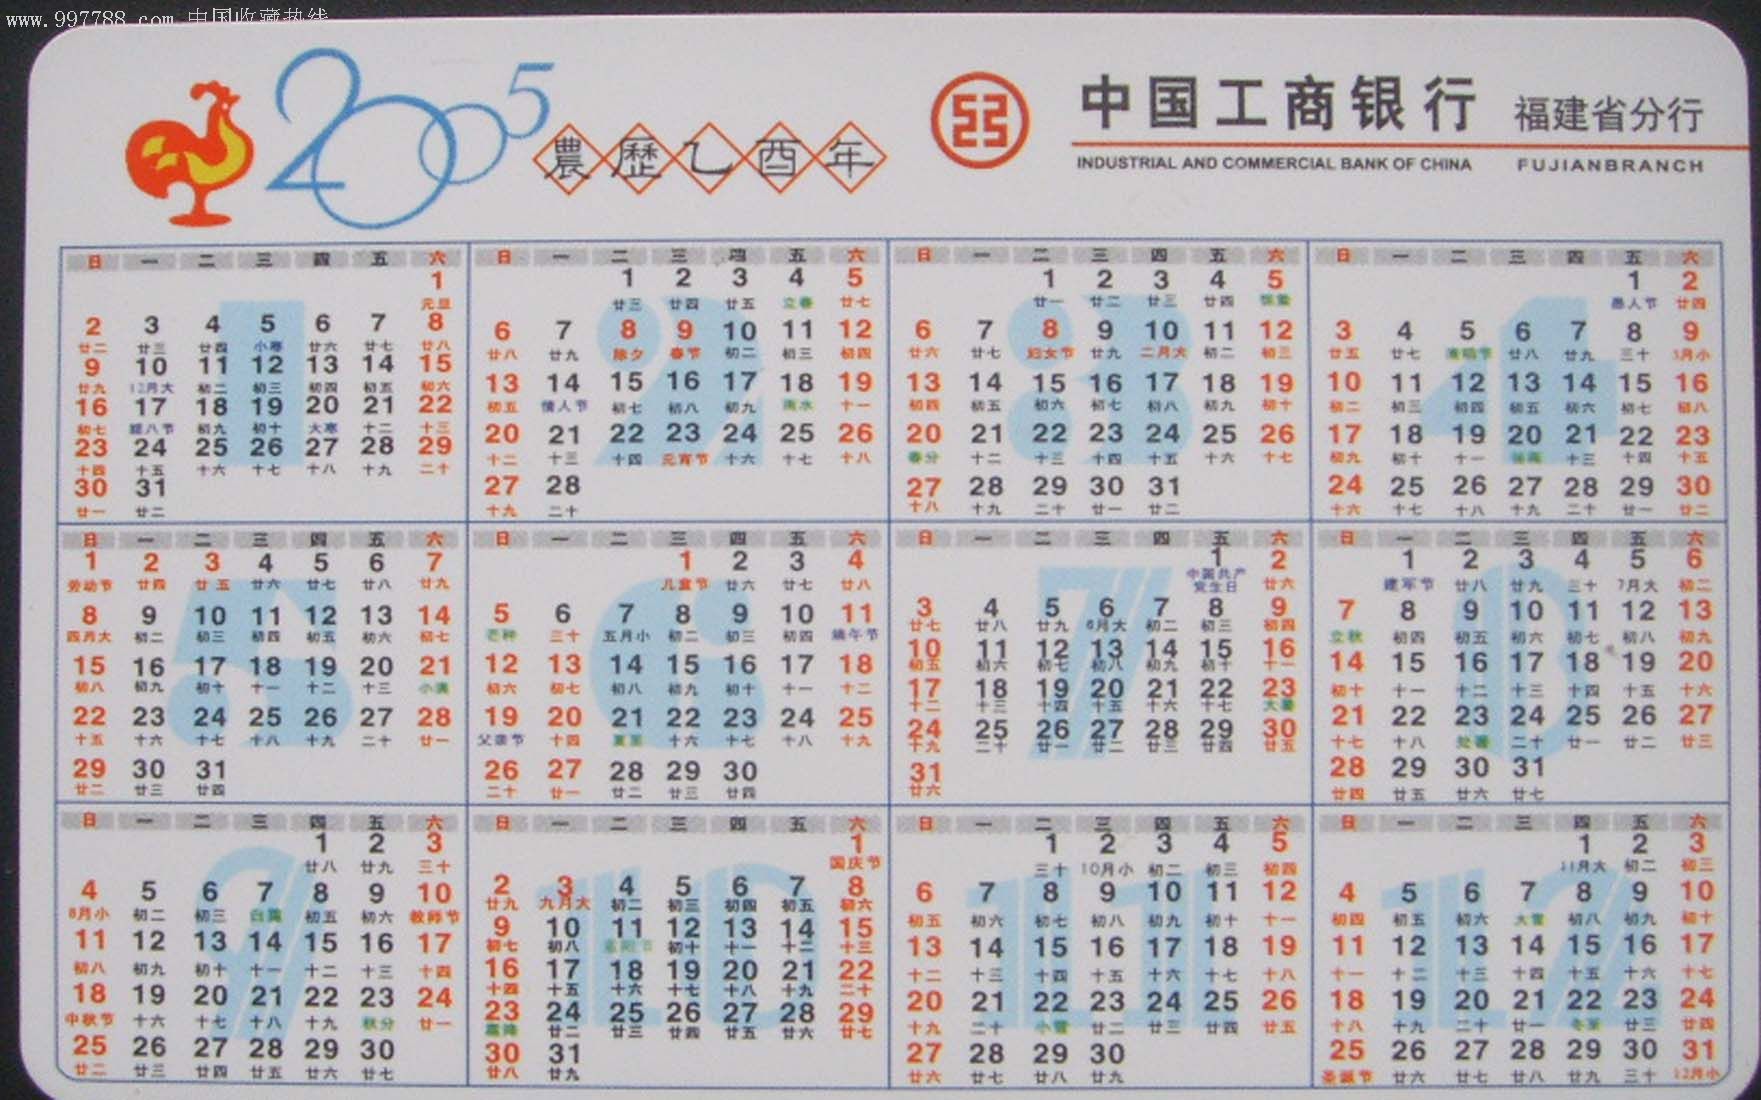 2005年日历全年表图片